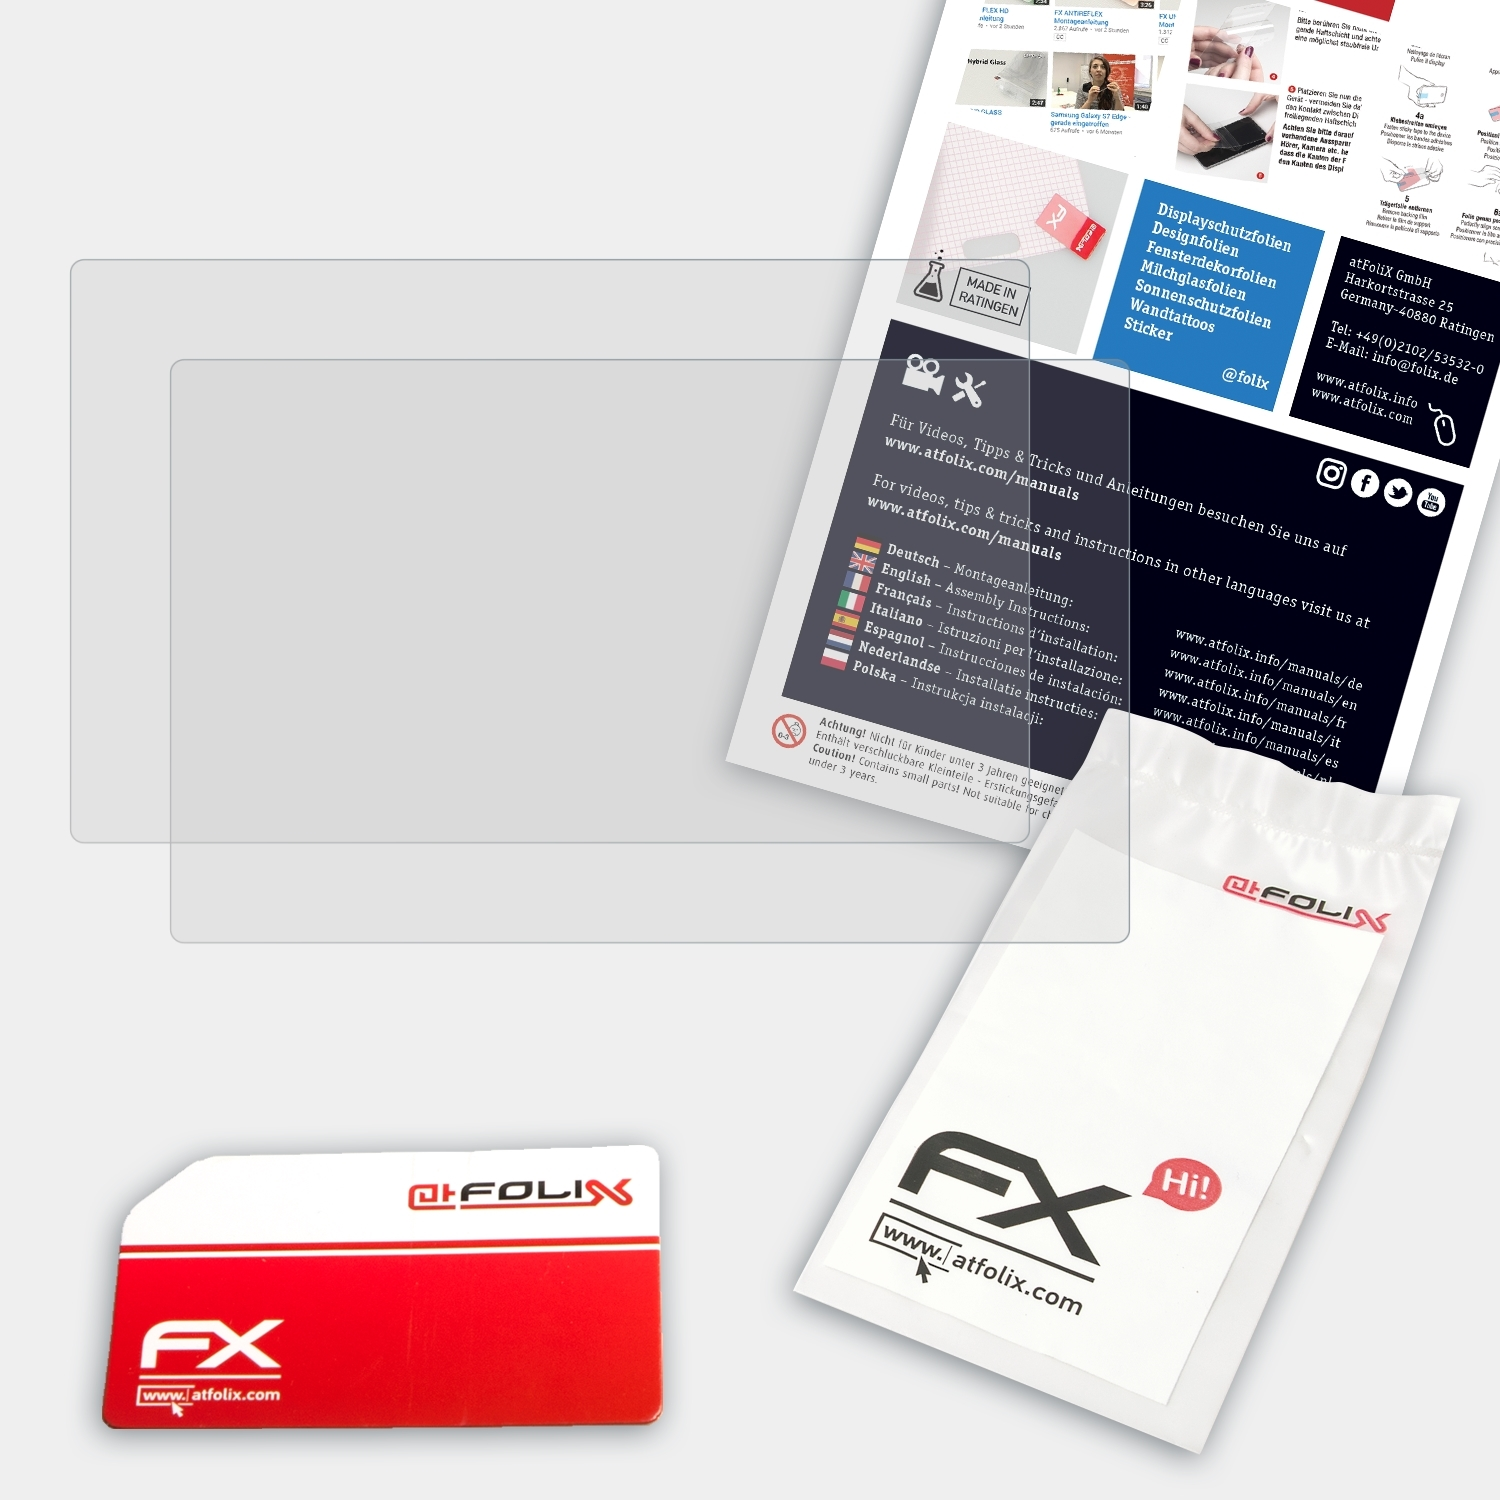 ATFOLIX Displayschutz(für Pro) 2x 24 Artist XP-PEN FX-Antireflex